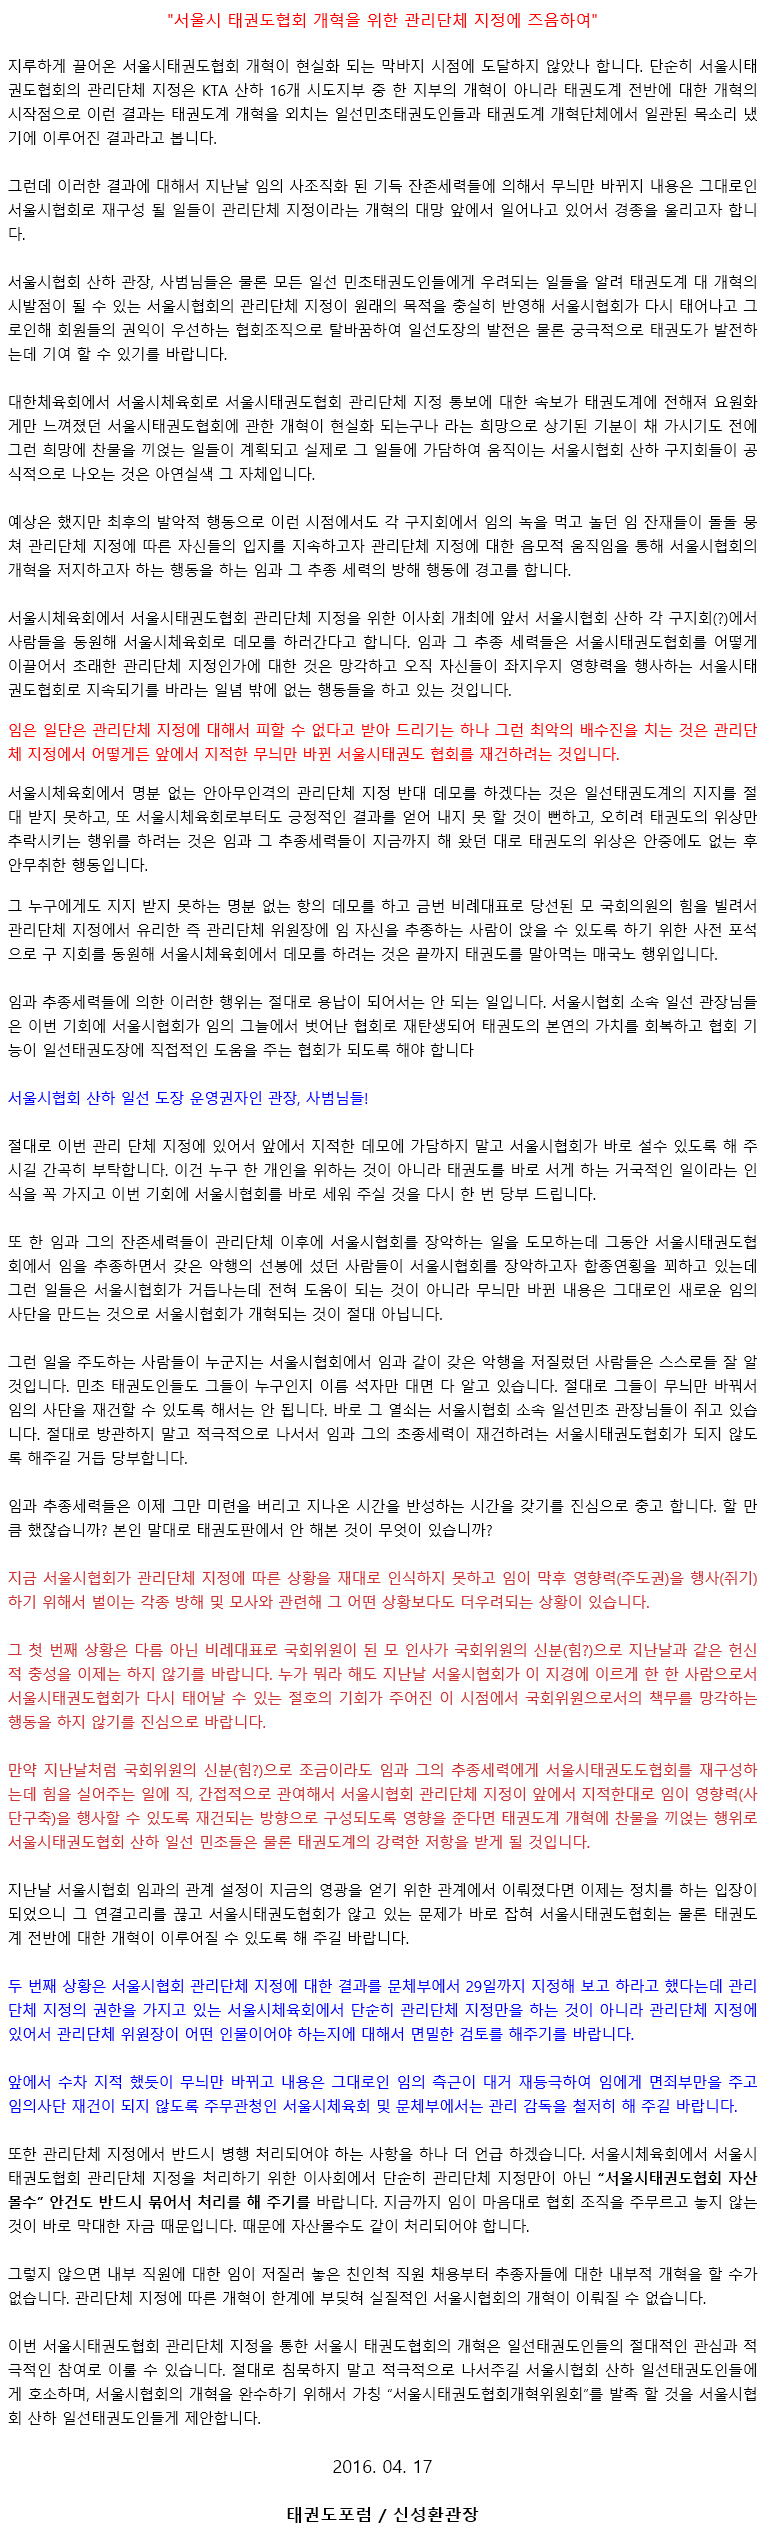 20160417_서울시태권도협회개혁을위한관리단체지정에즈음하여.gif